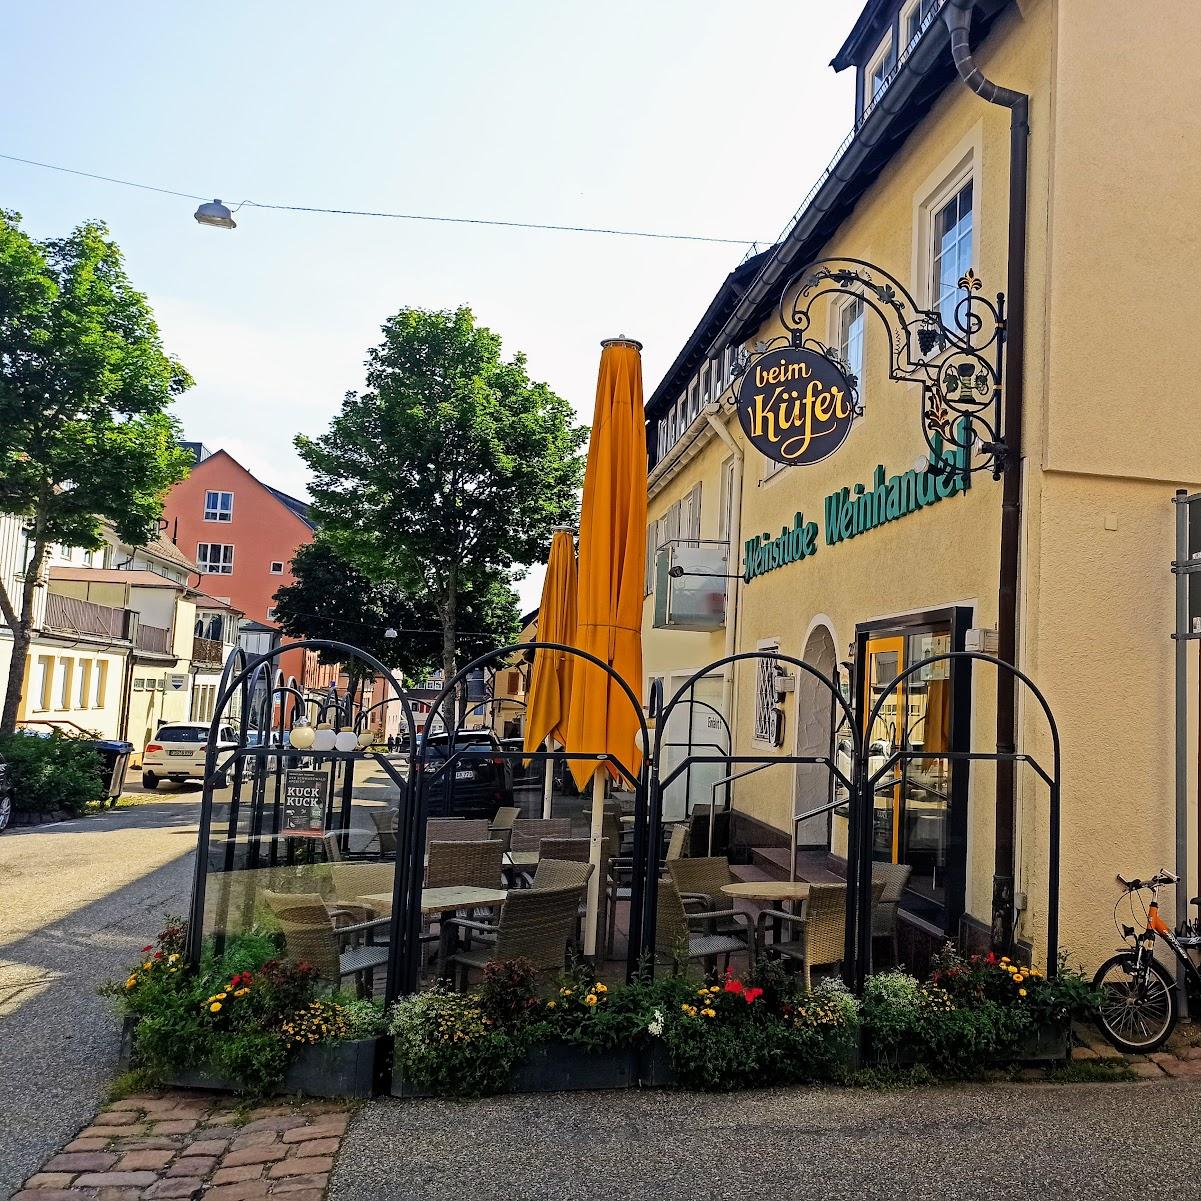 Restaurant "Beim Küfer" in Freudenstadt